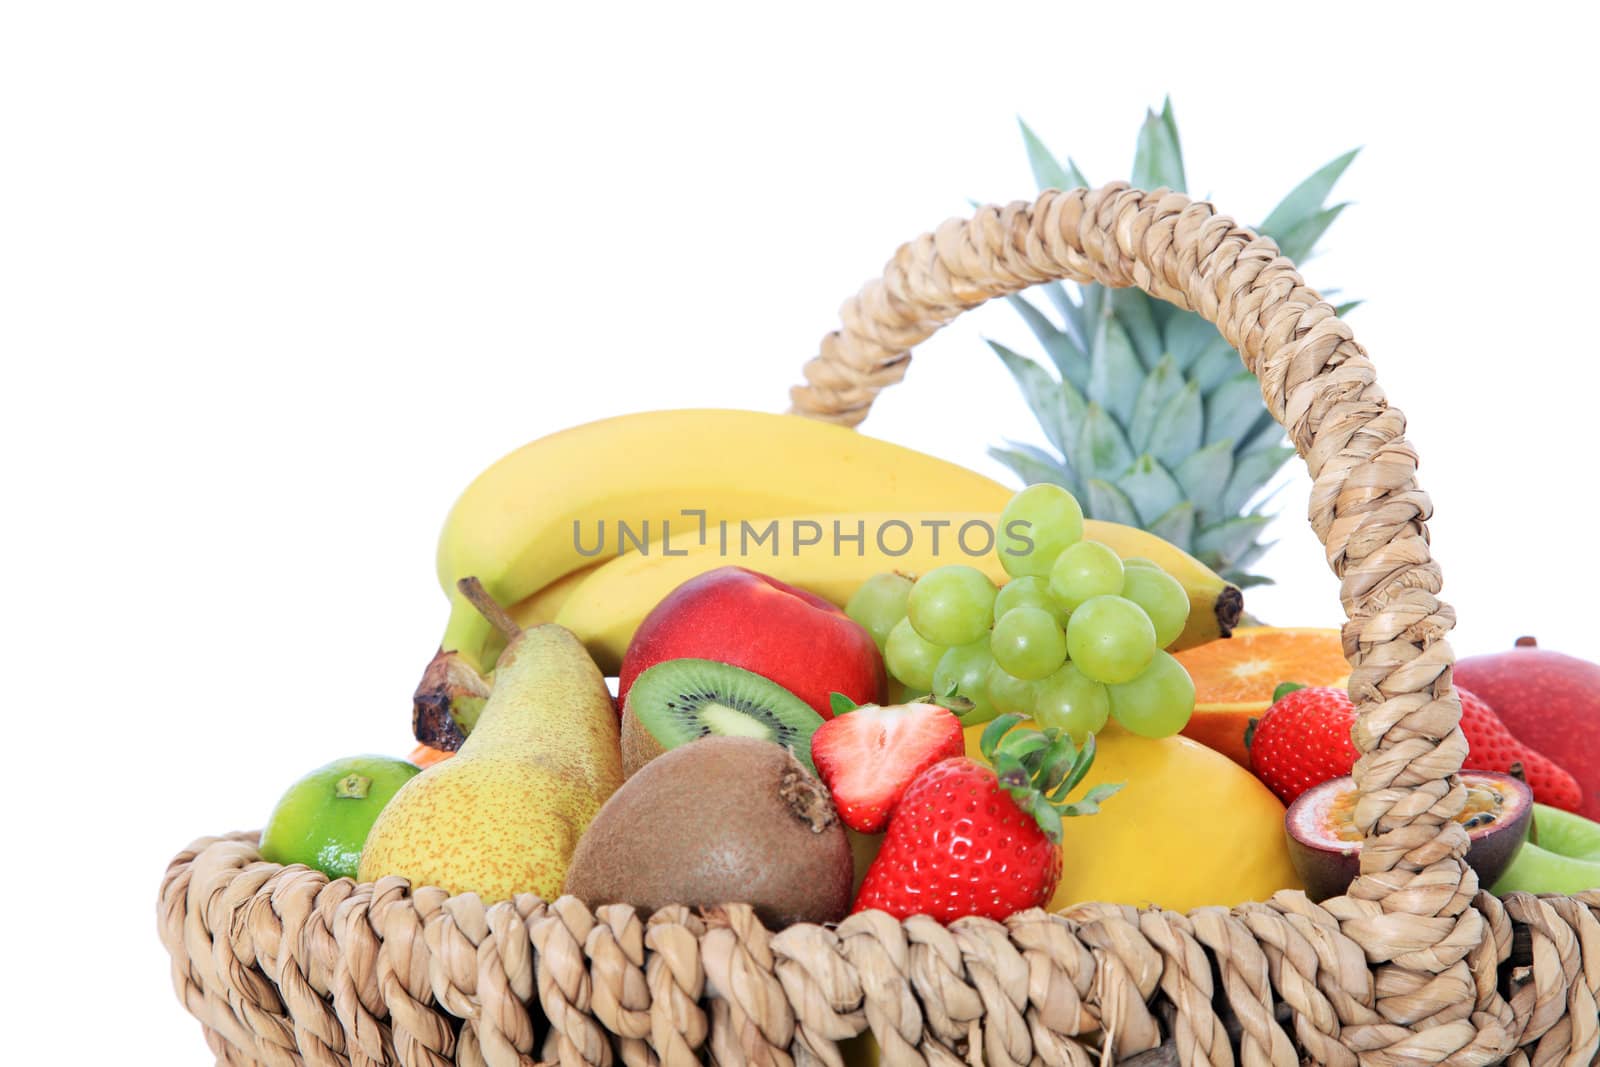 Fruits by kaarsten